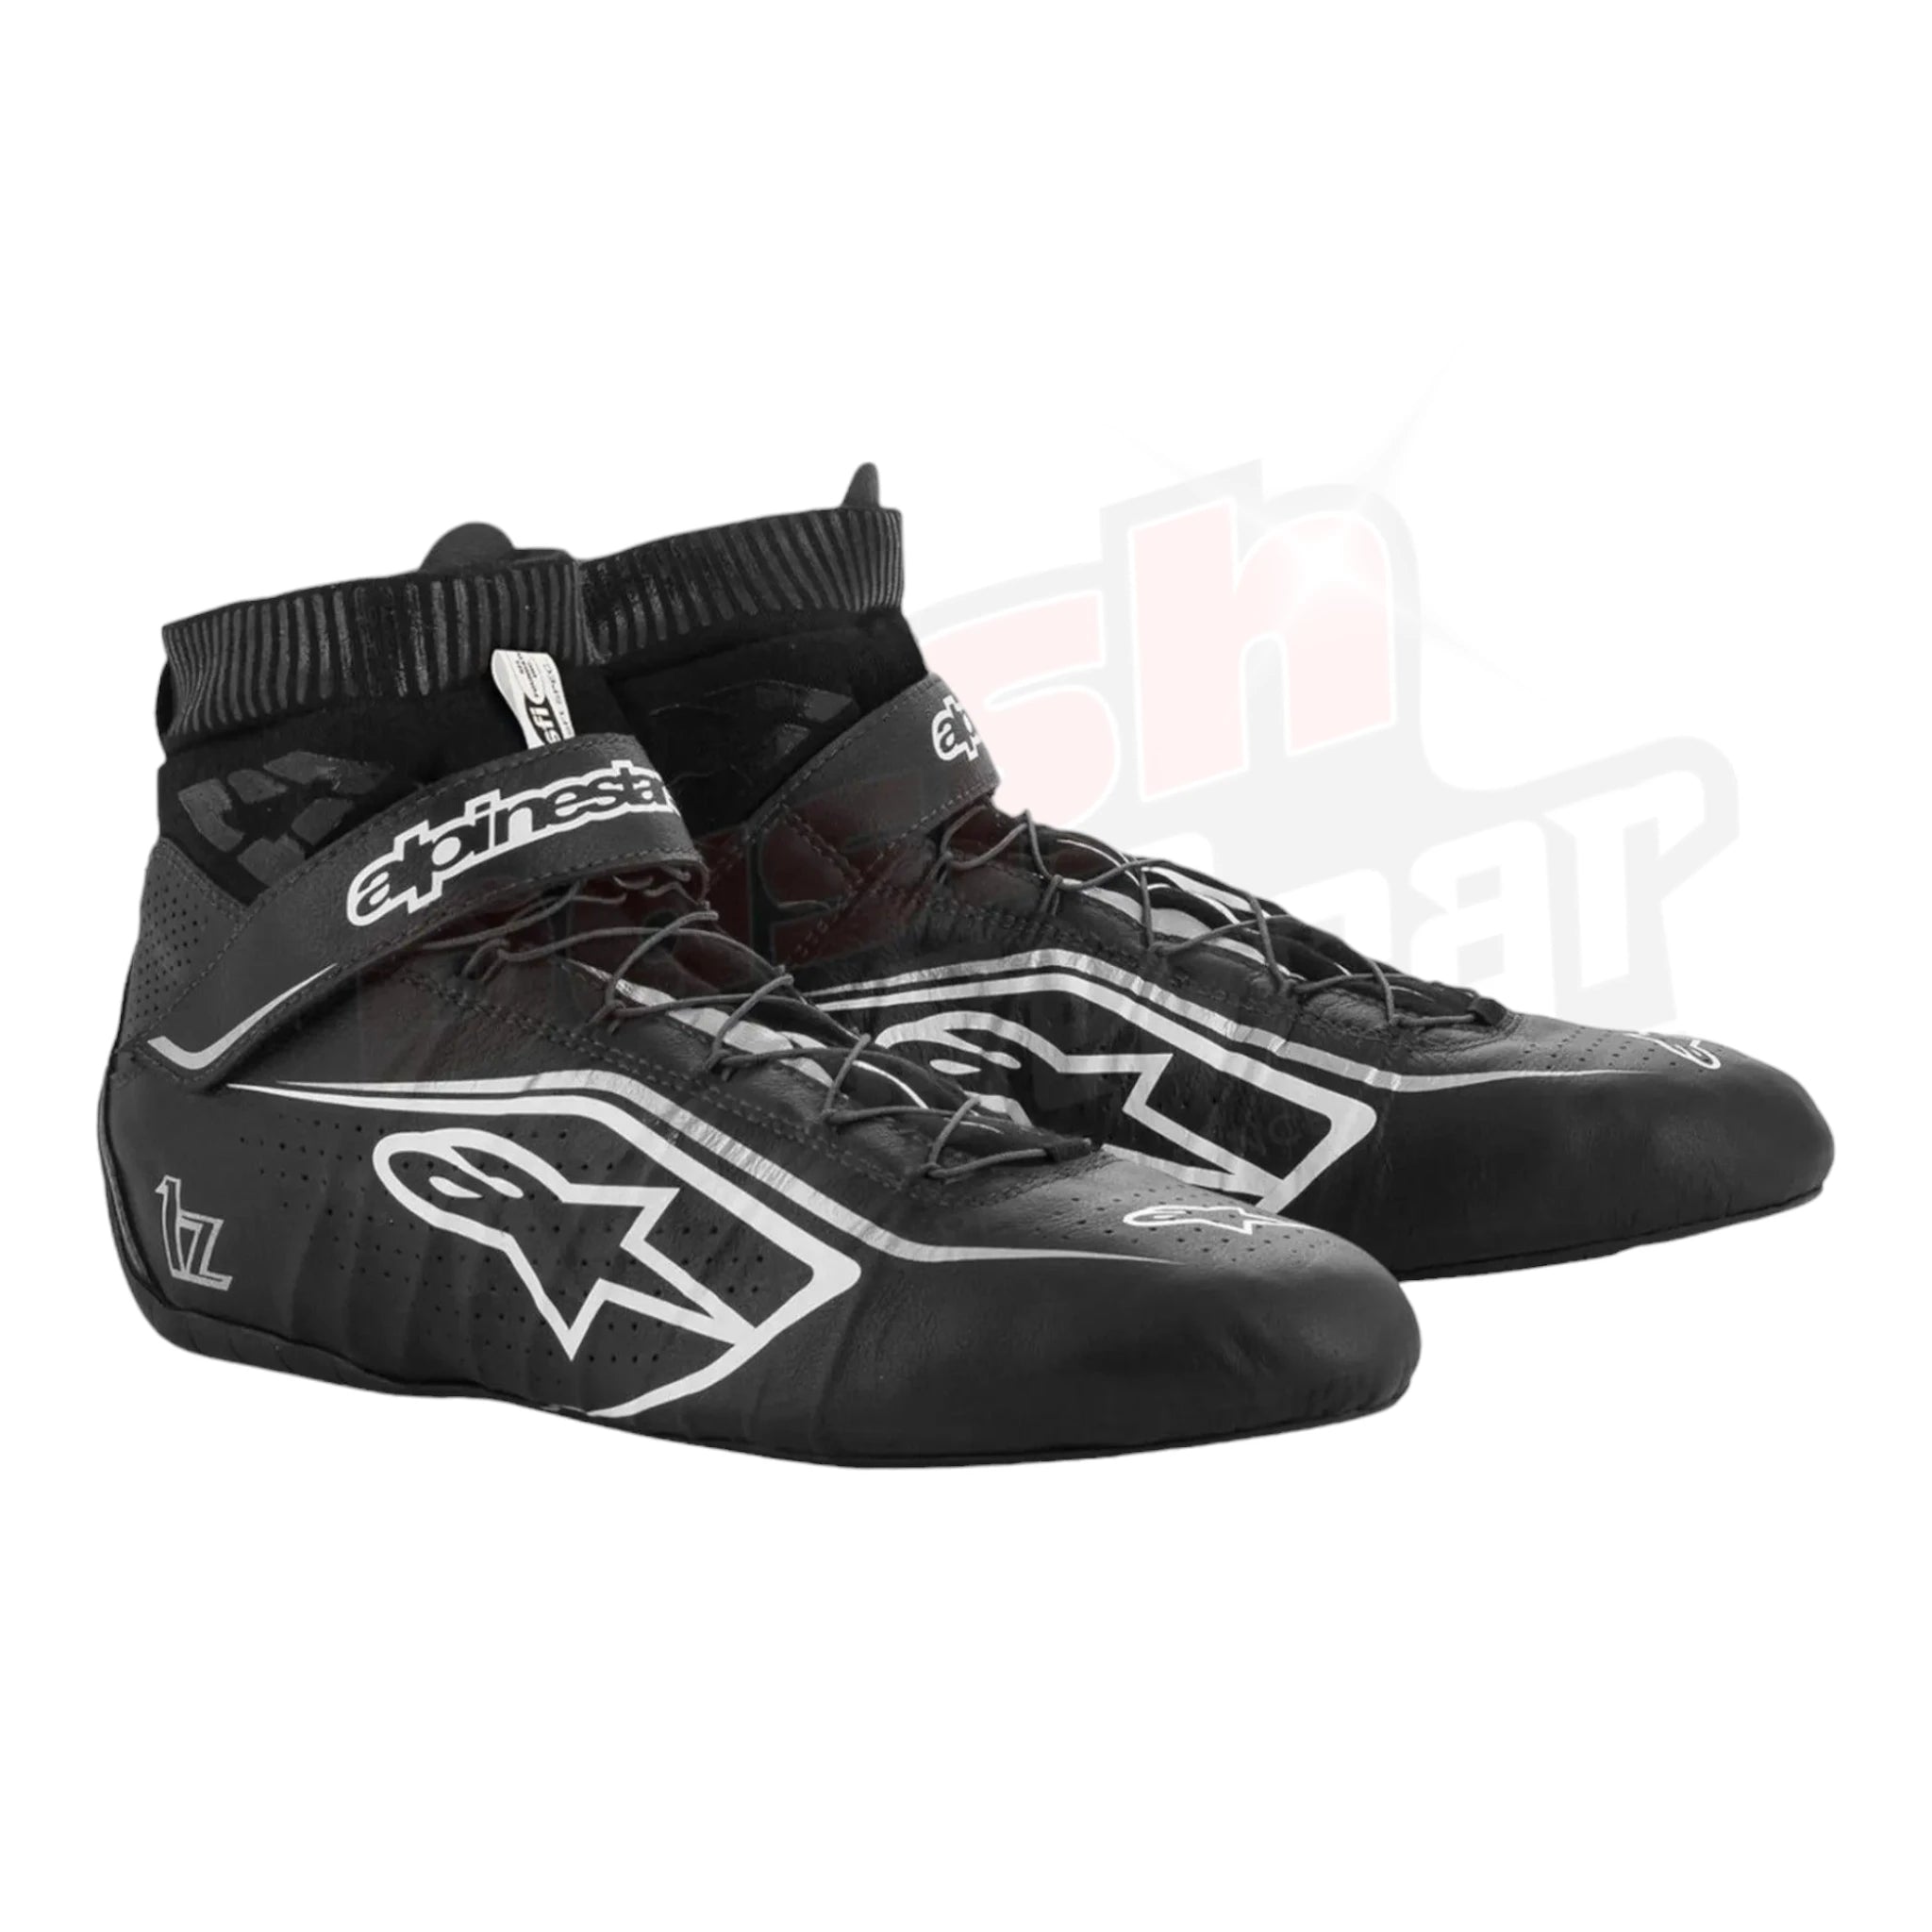 2021 Zhou Guanyu Alpinestar F2 Race Shoes